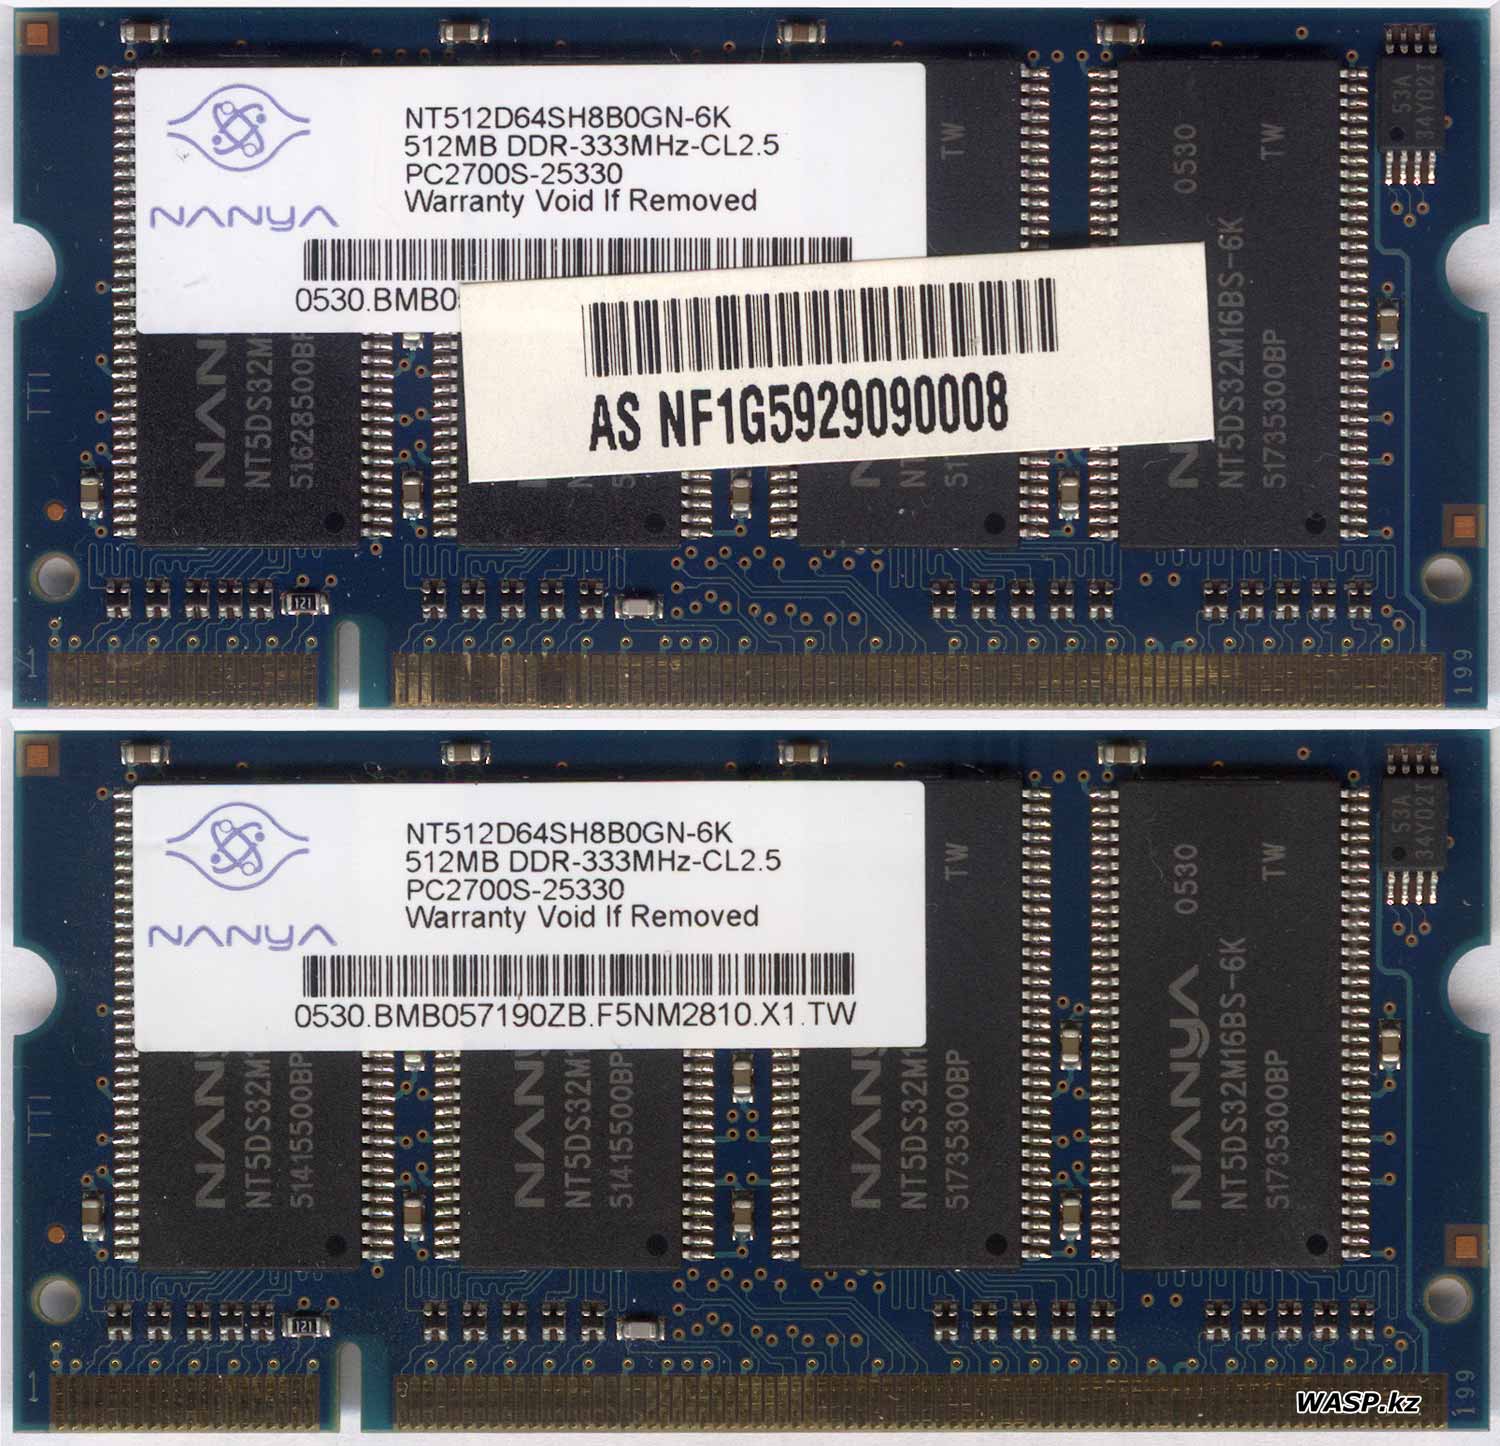 Nanya NT512D64SH8B0GN-6K память SO-DIMM тип DDR